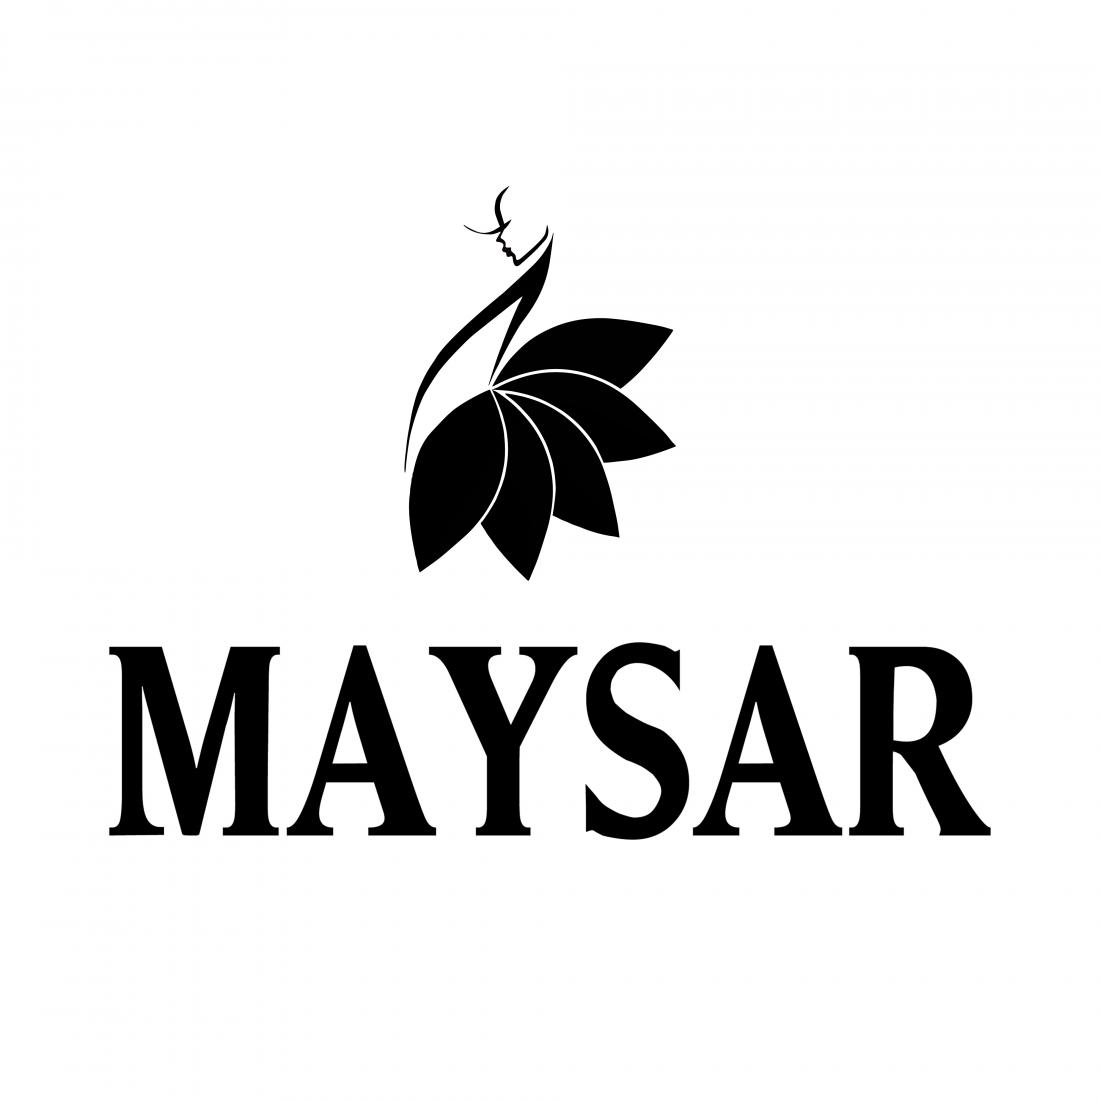 Нижнее белье и пижамы со скидкой 20% в интернет-магазине "MAYSAR"